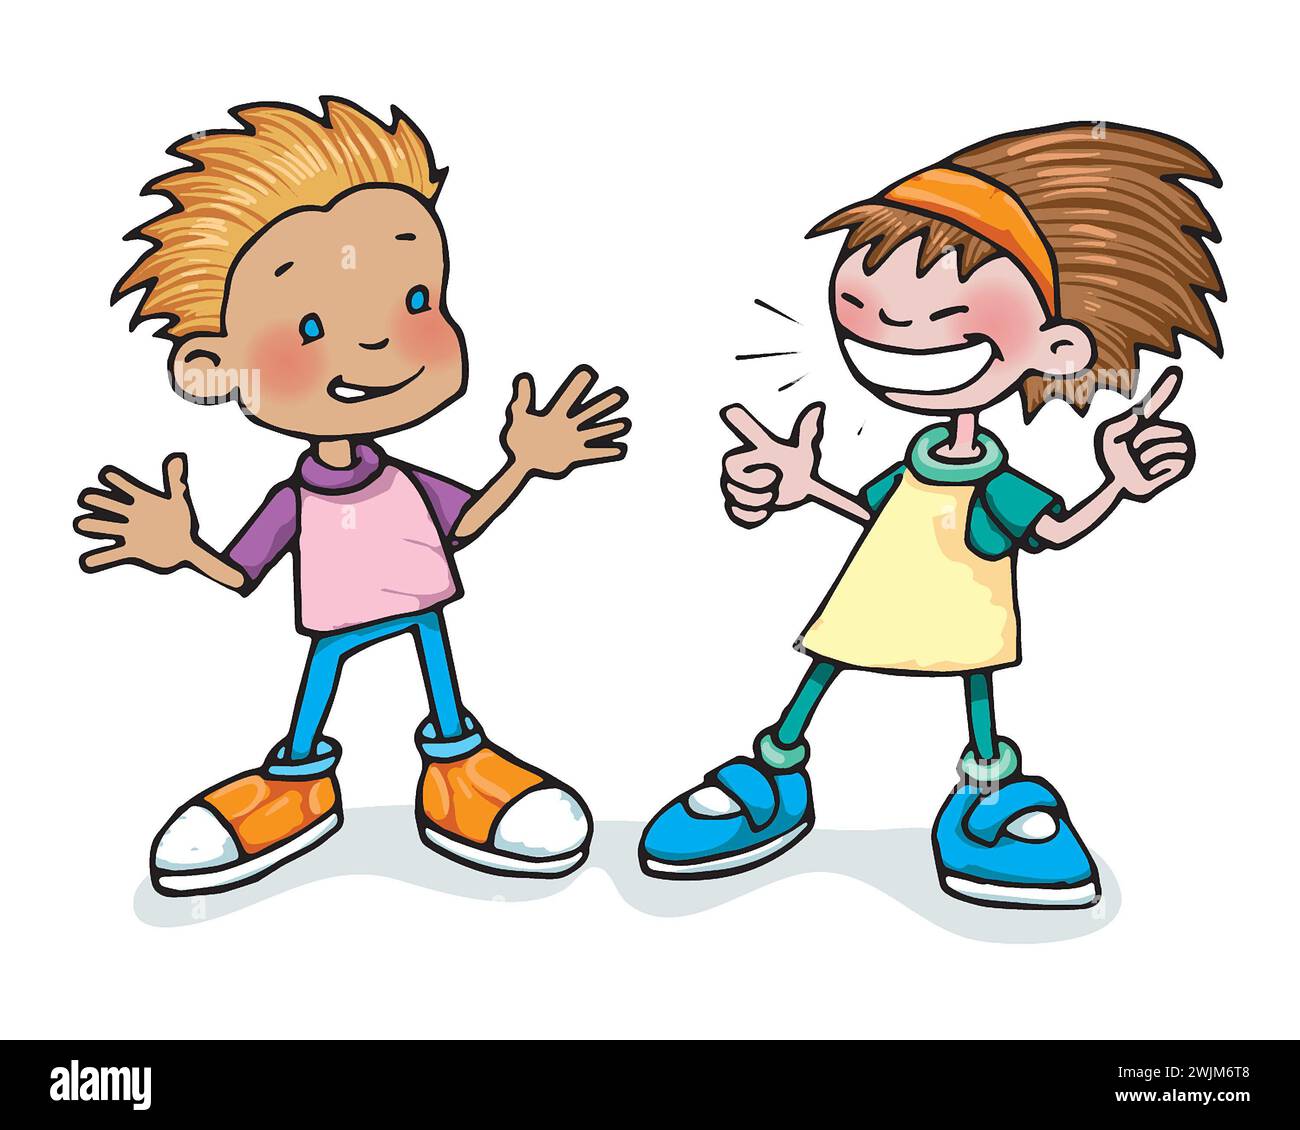 Art White Boy & Girl, 5-7 Jahre alt, lächelt sich an. Konzept: Sozialisierung, soziale Interaktion, Freundschaft, emotionale Alphabetisierung. Stockfoto